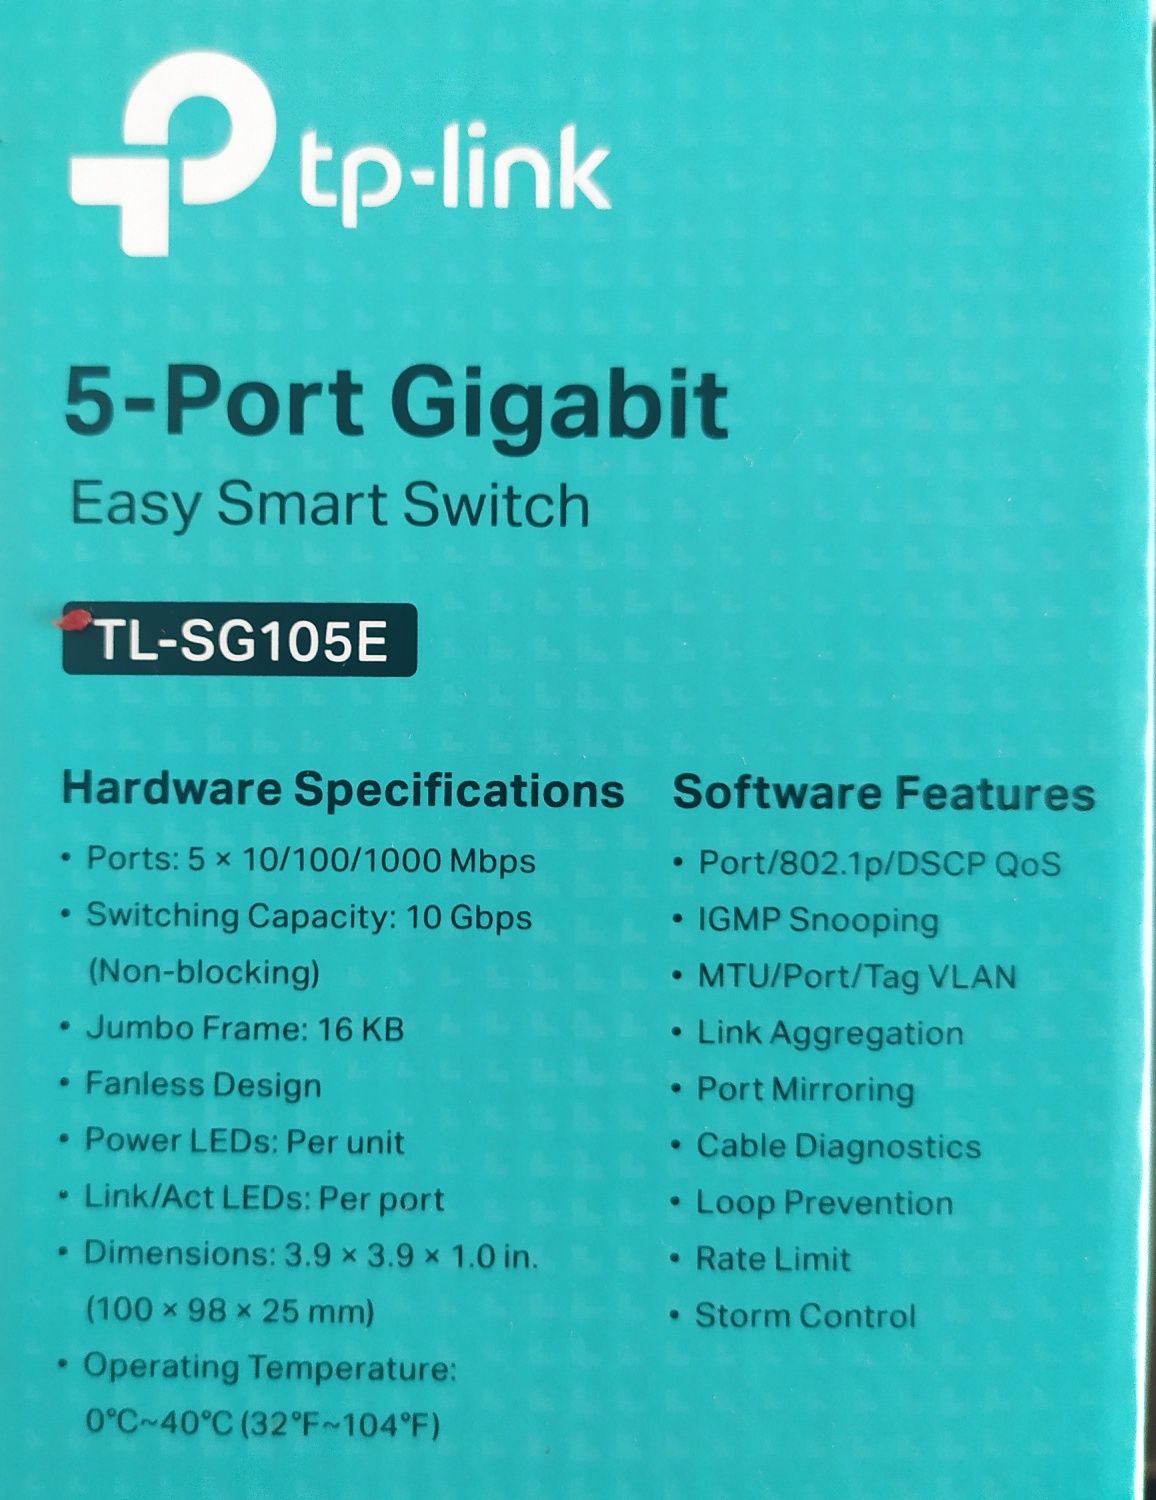 Switch 5 portas gigabit, VLANs, cable diag, link aggregation